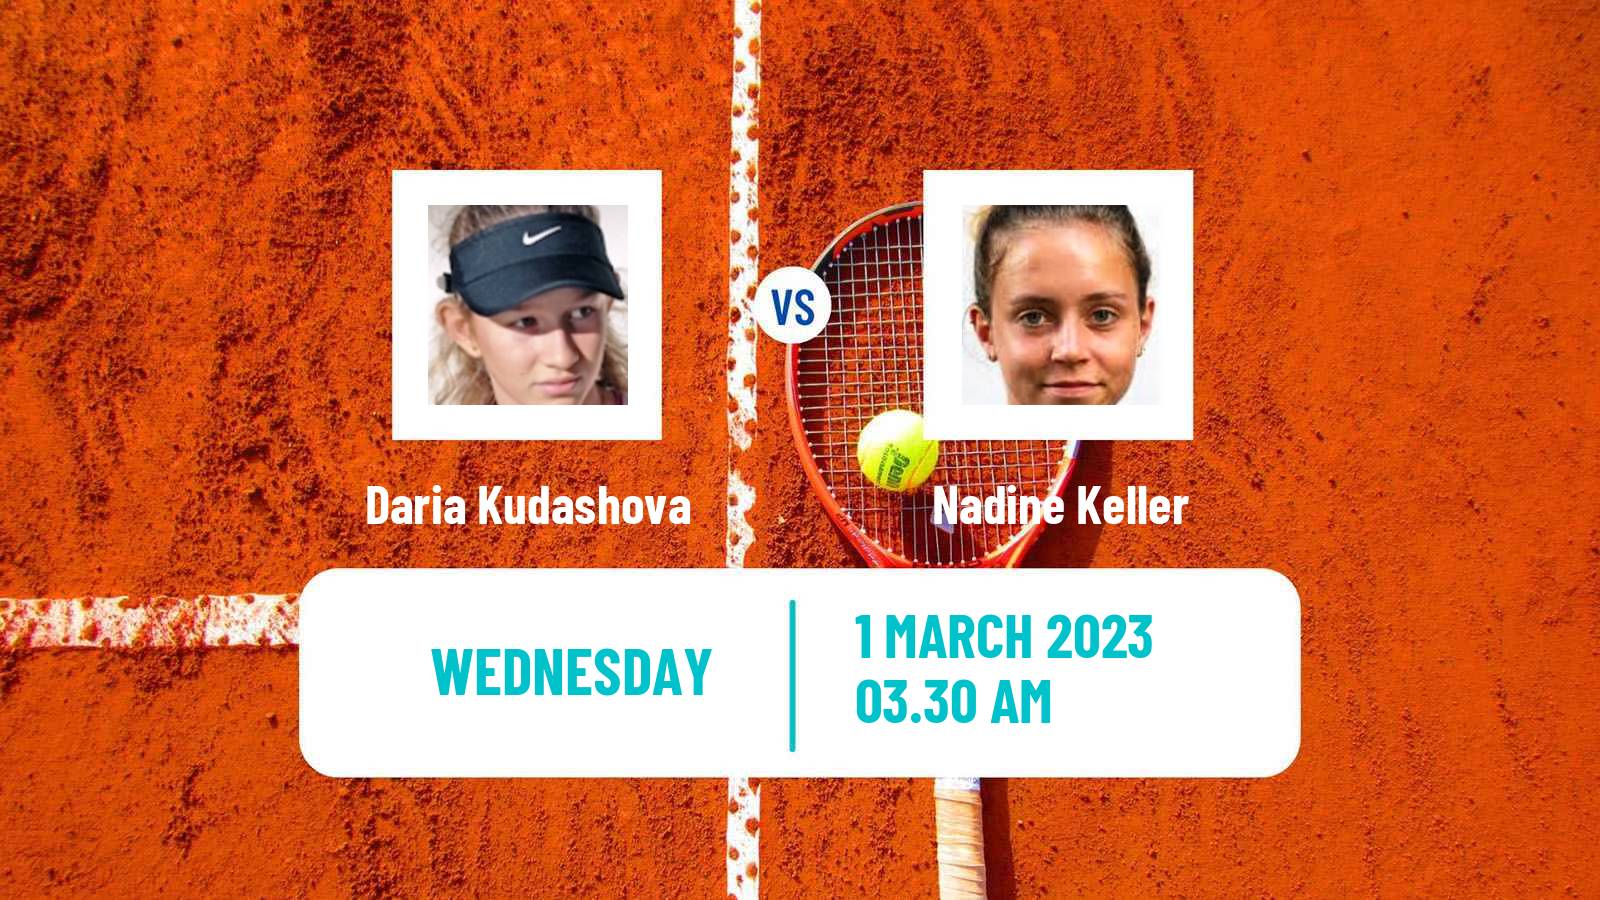 Tennis ITF Tournaments Daria Kudashova - Nadine Keller